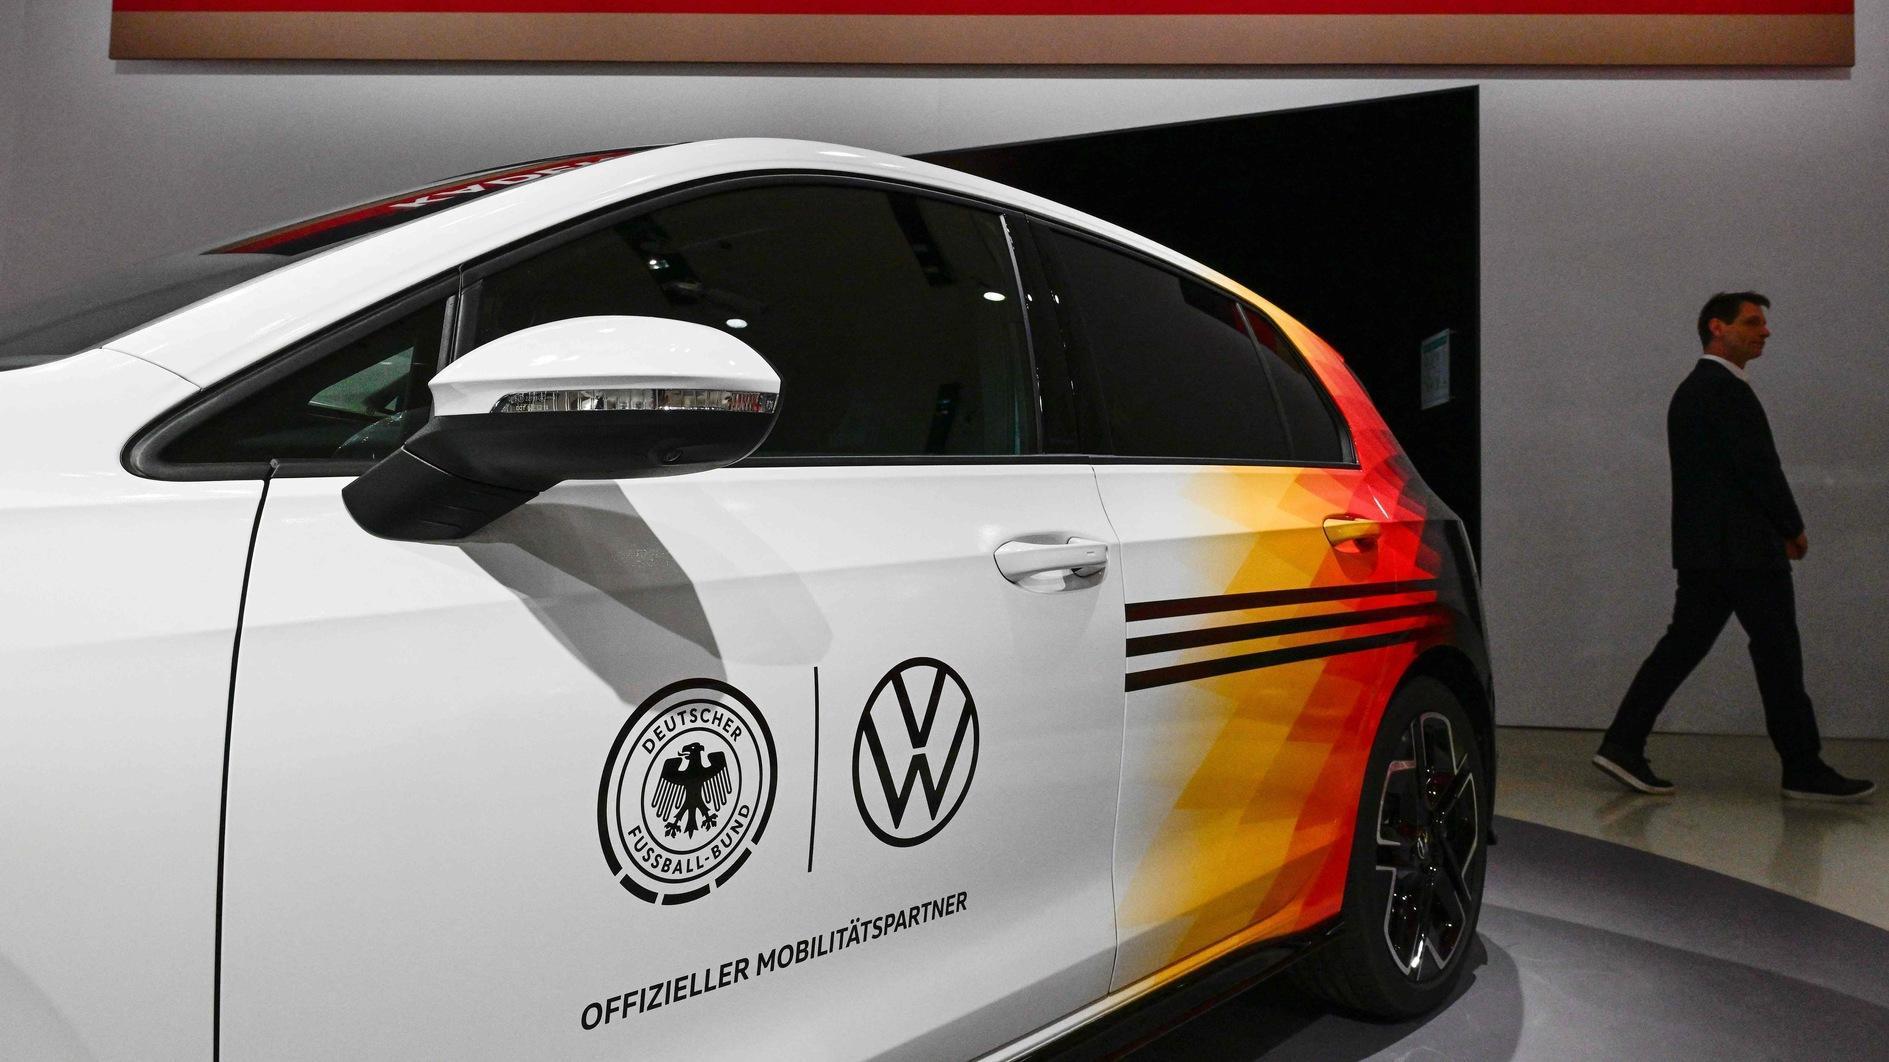 Volkswagen plant een goedkoper batterijmodel uit Europa voor Europa